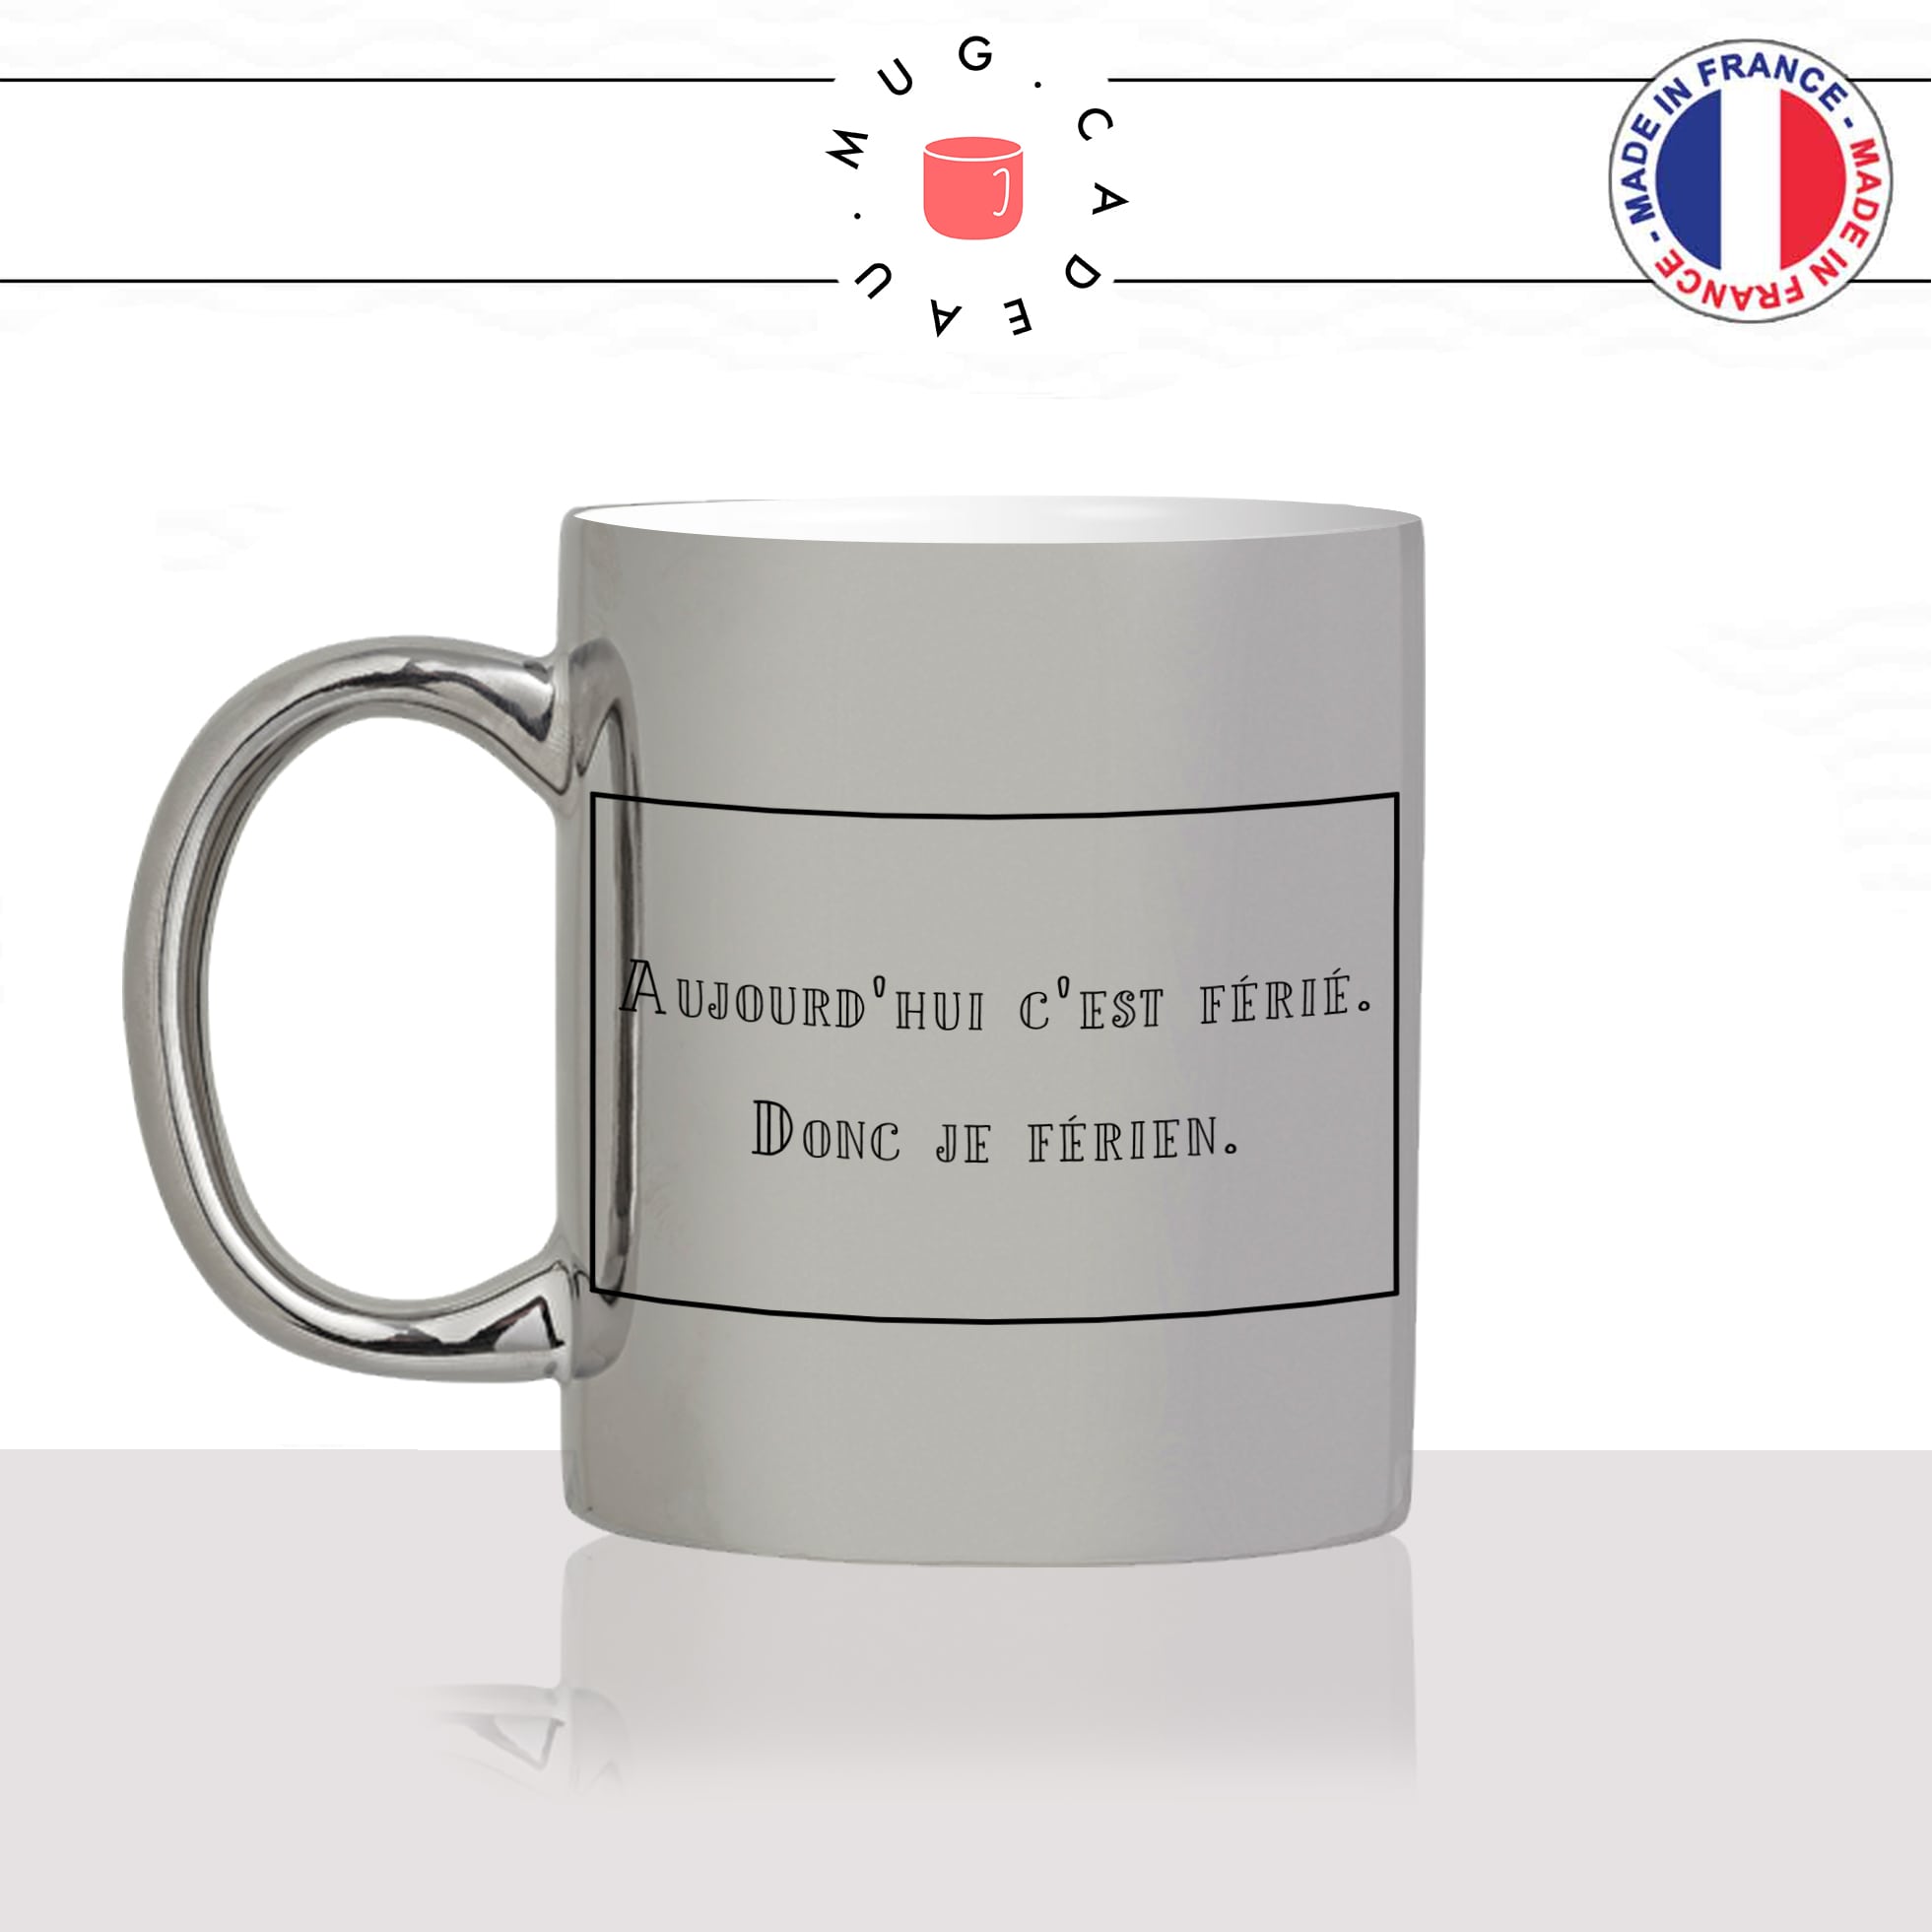 mug-tasse-argent-argenté-silver-aujourdhui-cest-ferié-je-fais-rien-flemme-collegue-femme-homme-idée-cadeau-fun-cool-café-thé-original-min